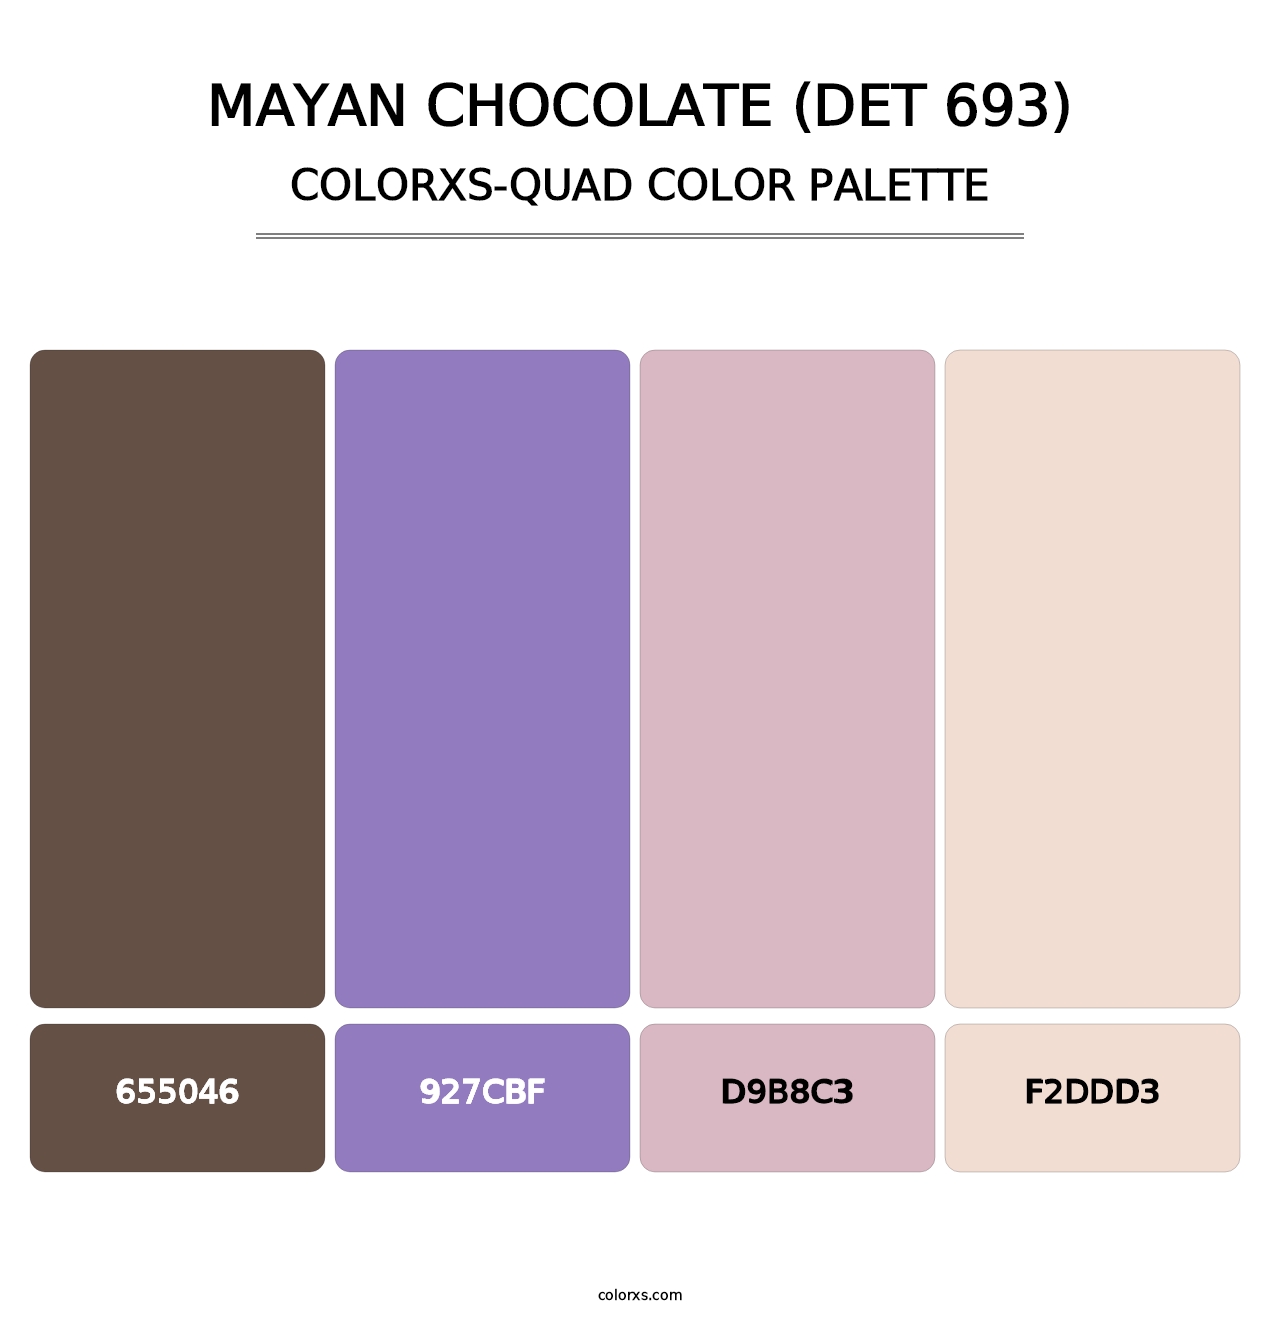 Mayan Chocolate (DET 693) - Colorxs Quad Palette